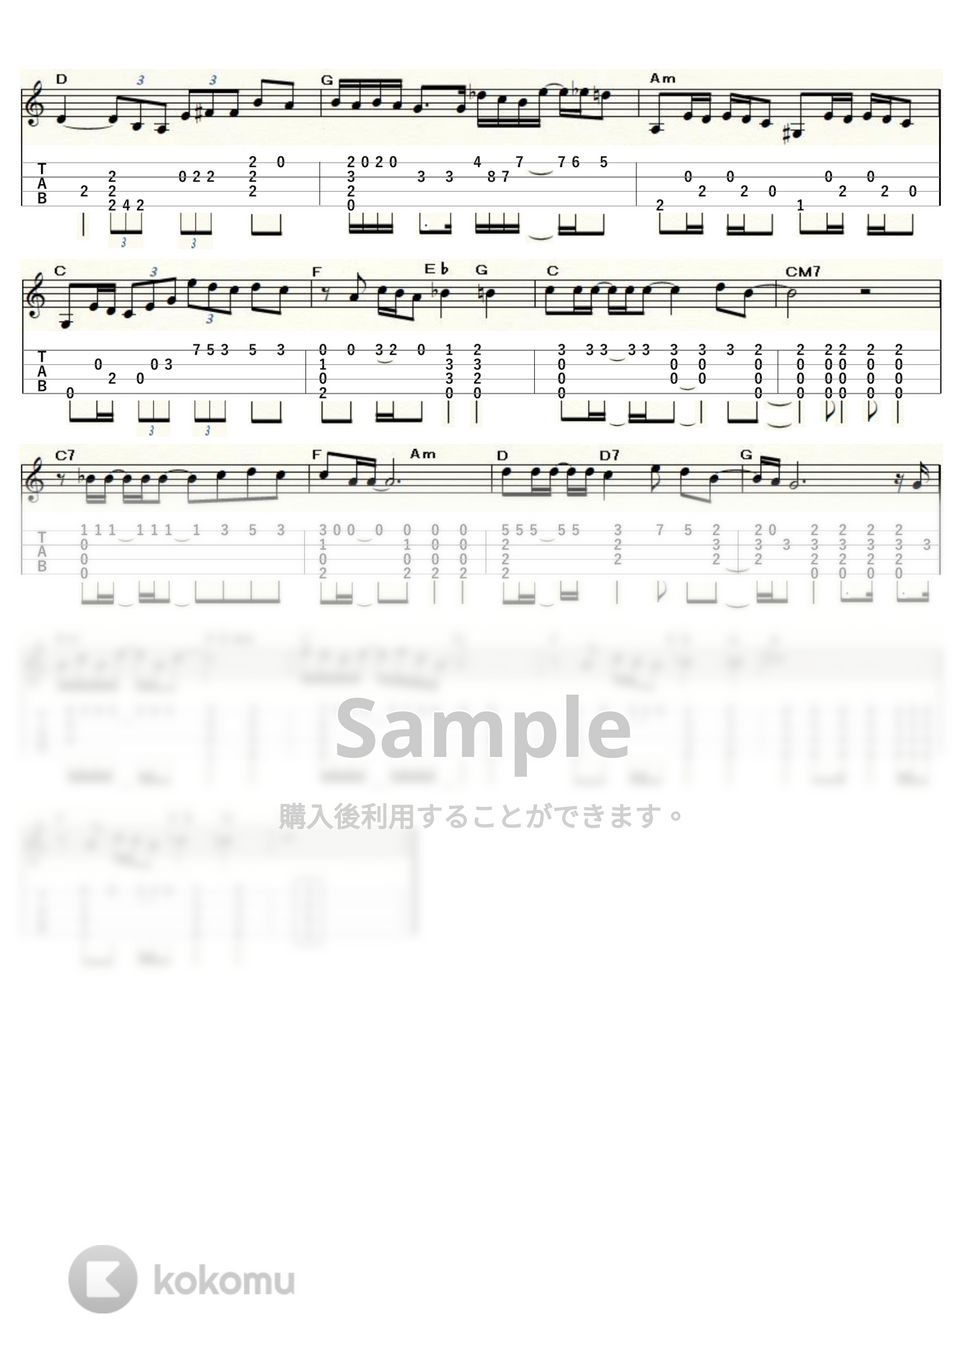 ビートルズ - サムシング (ｳｸﾚﾚｿﾛ / Low-G / 中級) by ukulelepapa